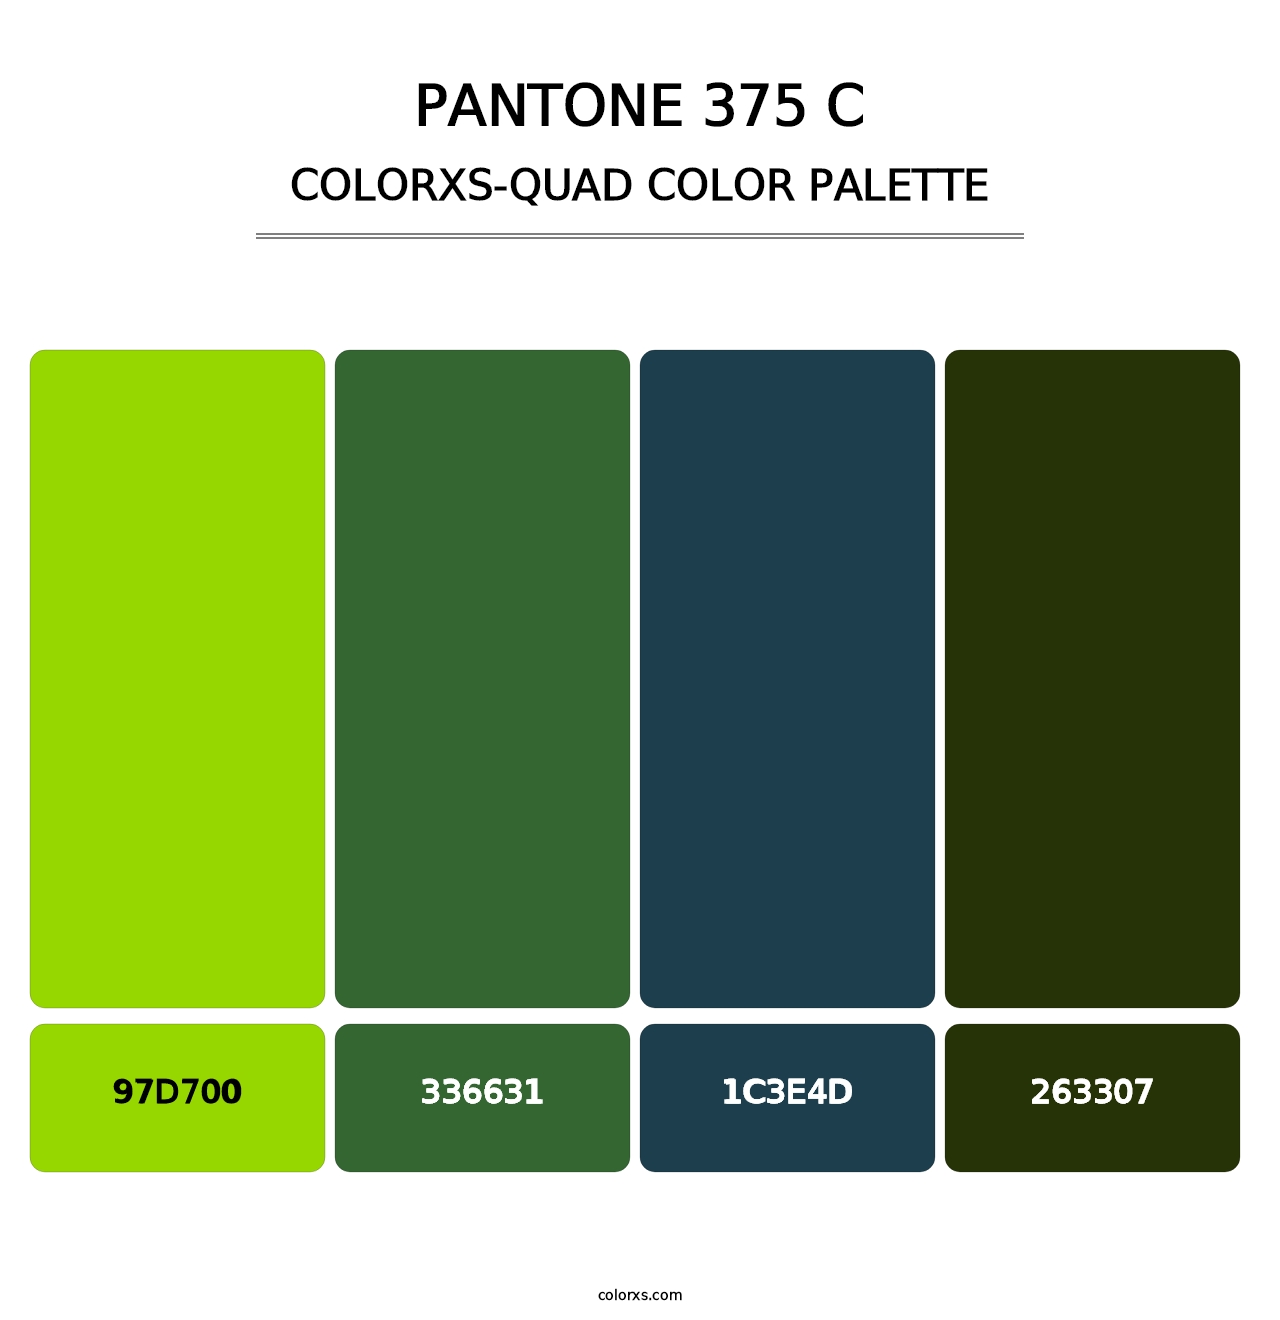 PANTONE 375 C - Colorxs Quad Palette